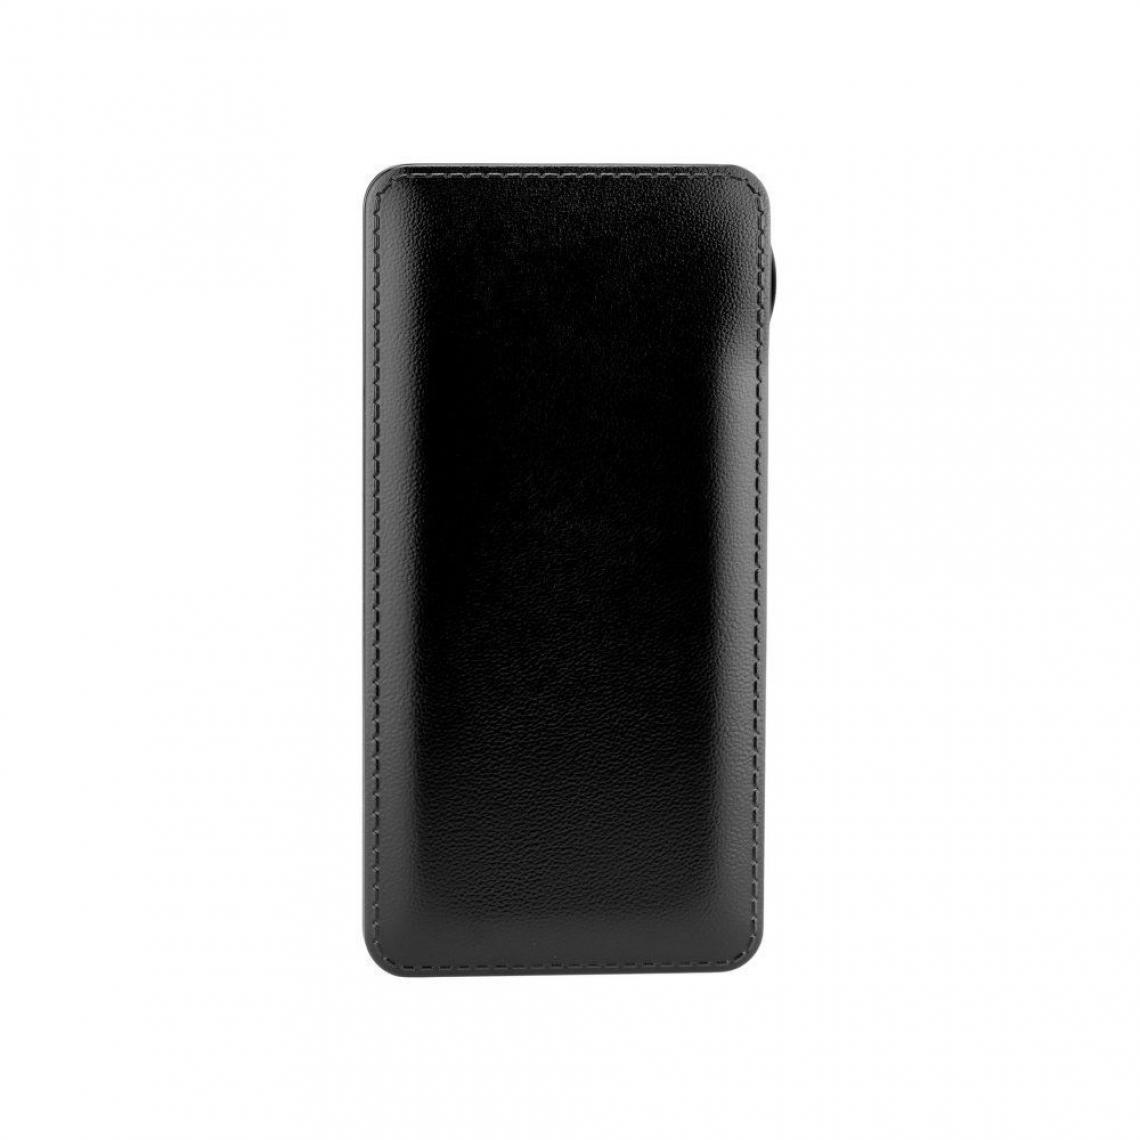 Ozzzo - Chargeur batterie externe 30000 mAh powerbank ozzzo noir pour SAMSUNG Galaxy J7 J700 - Autres accessoires smartphone